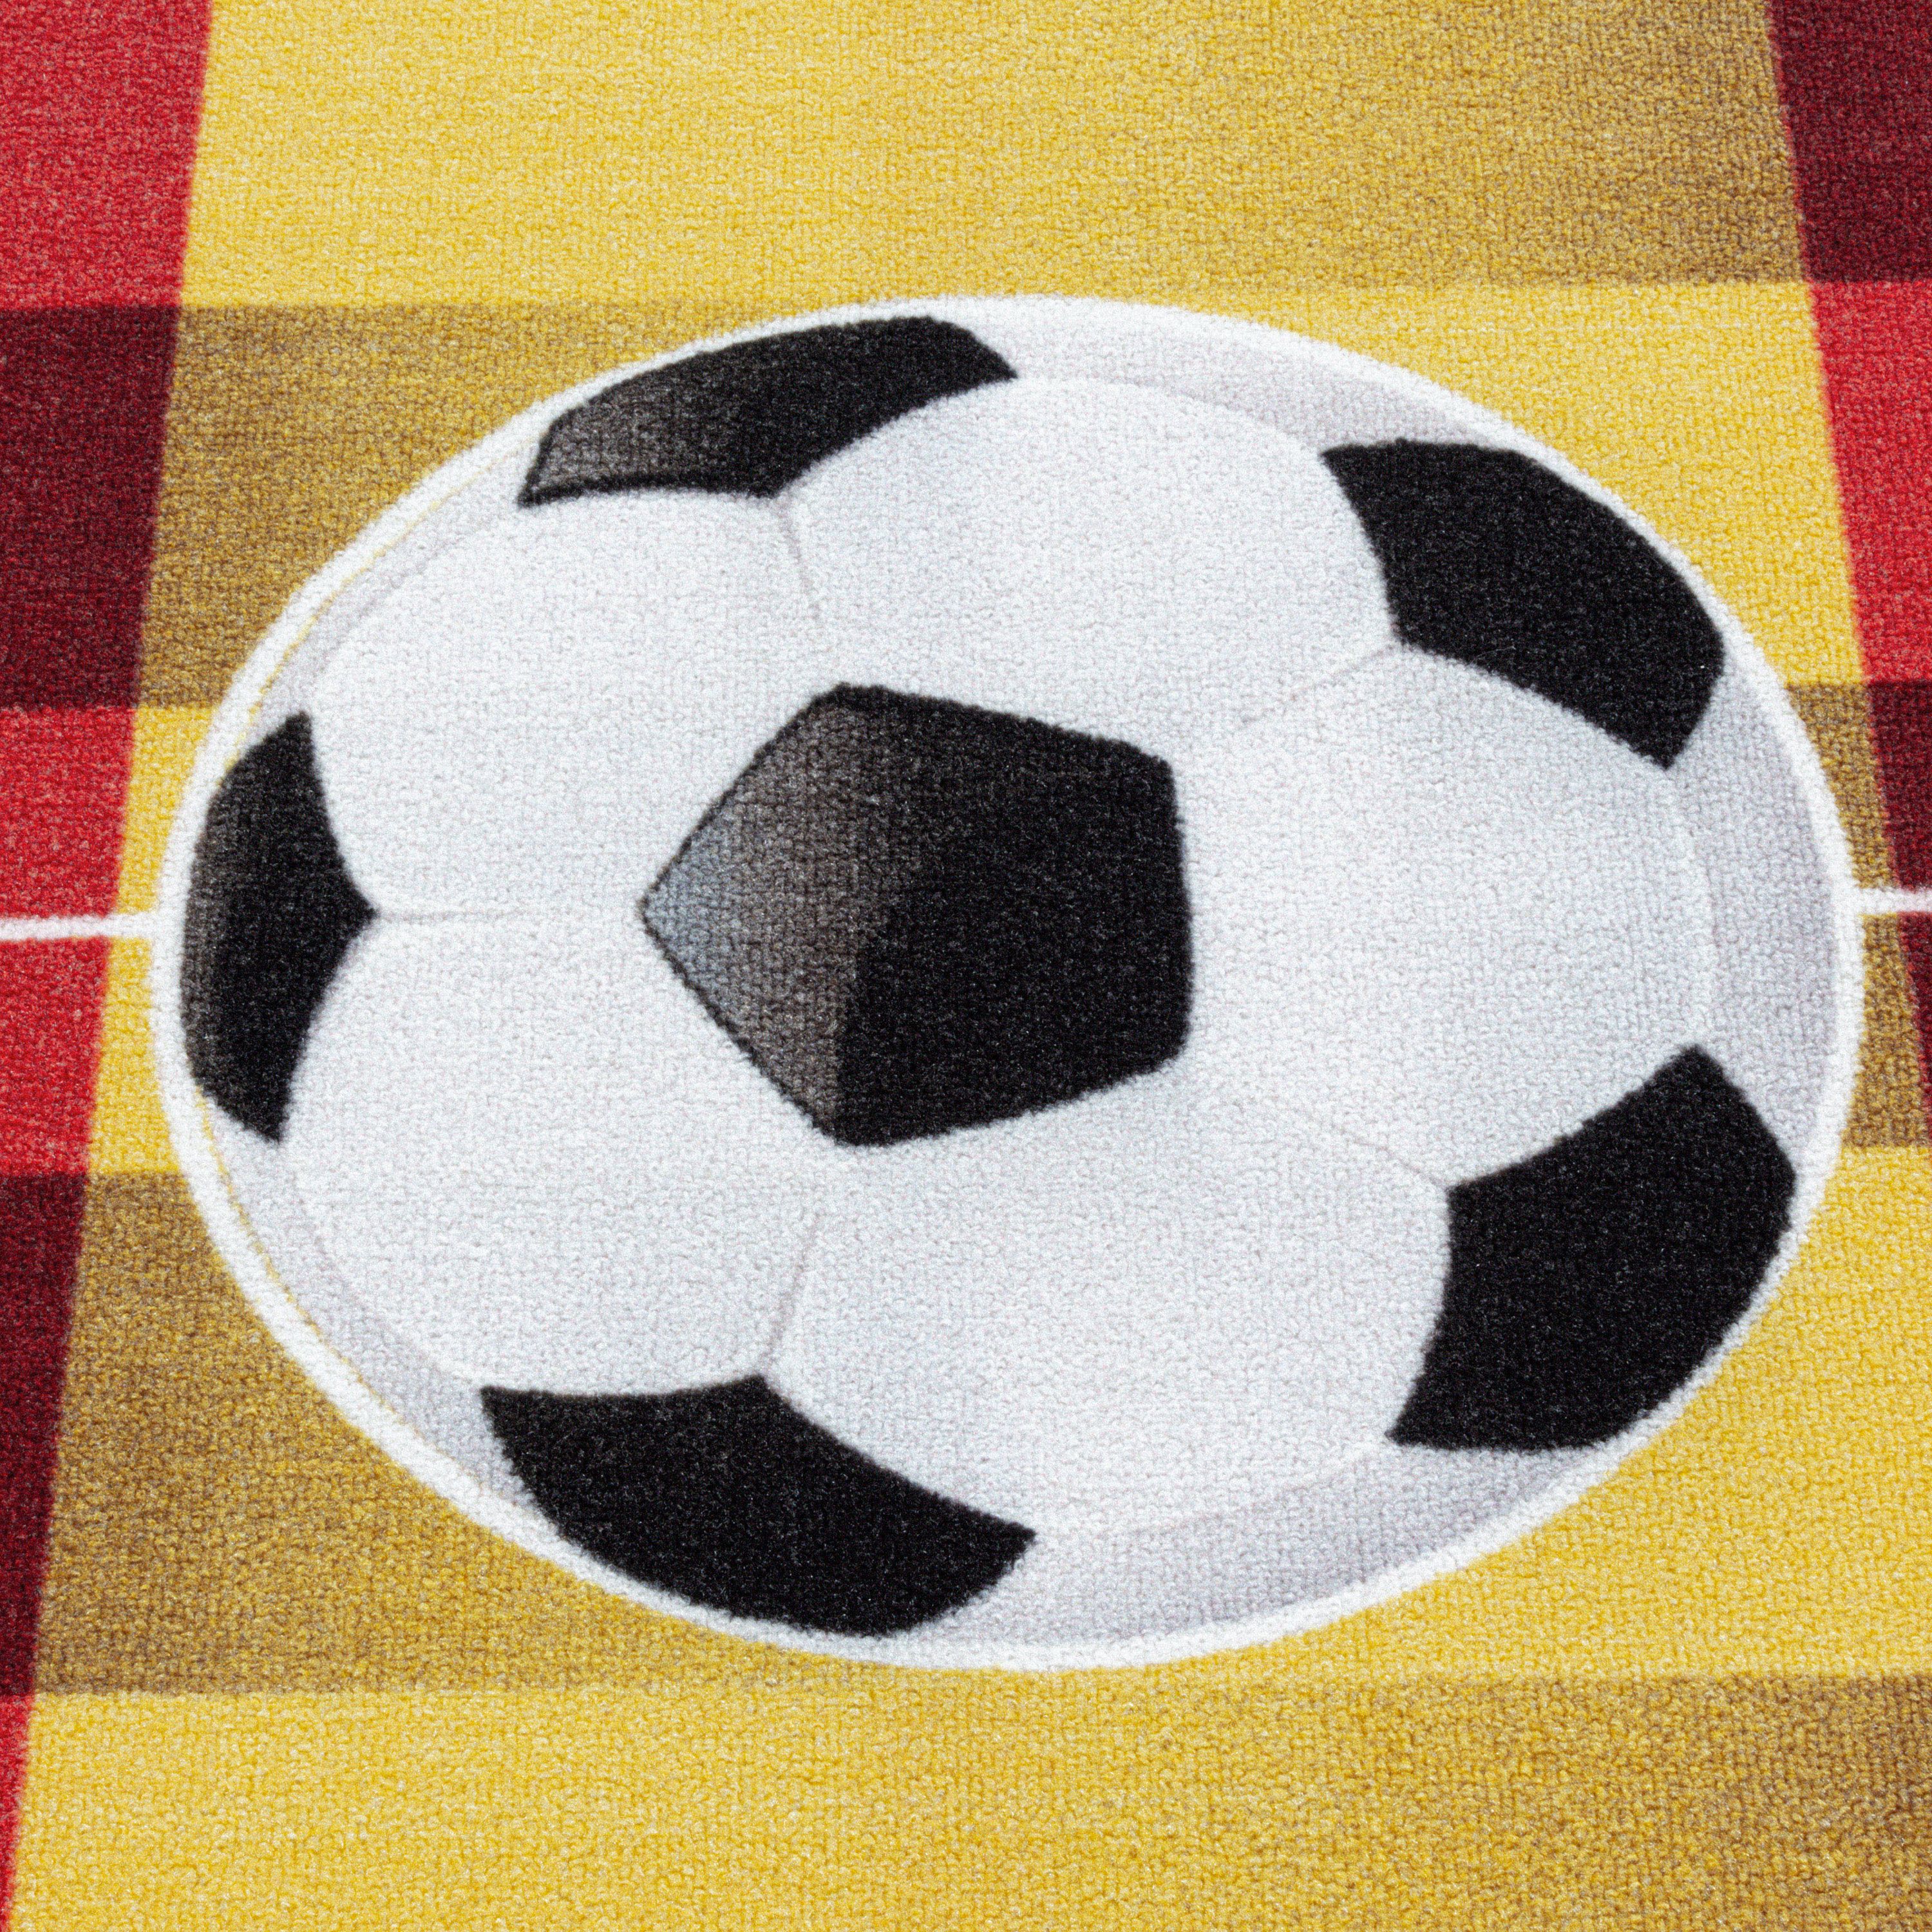 Kurzflor Kinderteppich Kinderzimmer Teppich Spielteppich Fussball Spanien Gelb